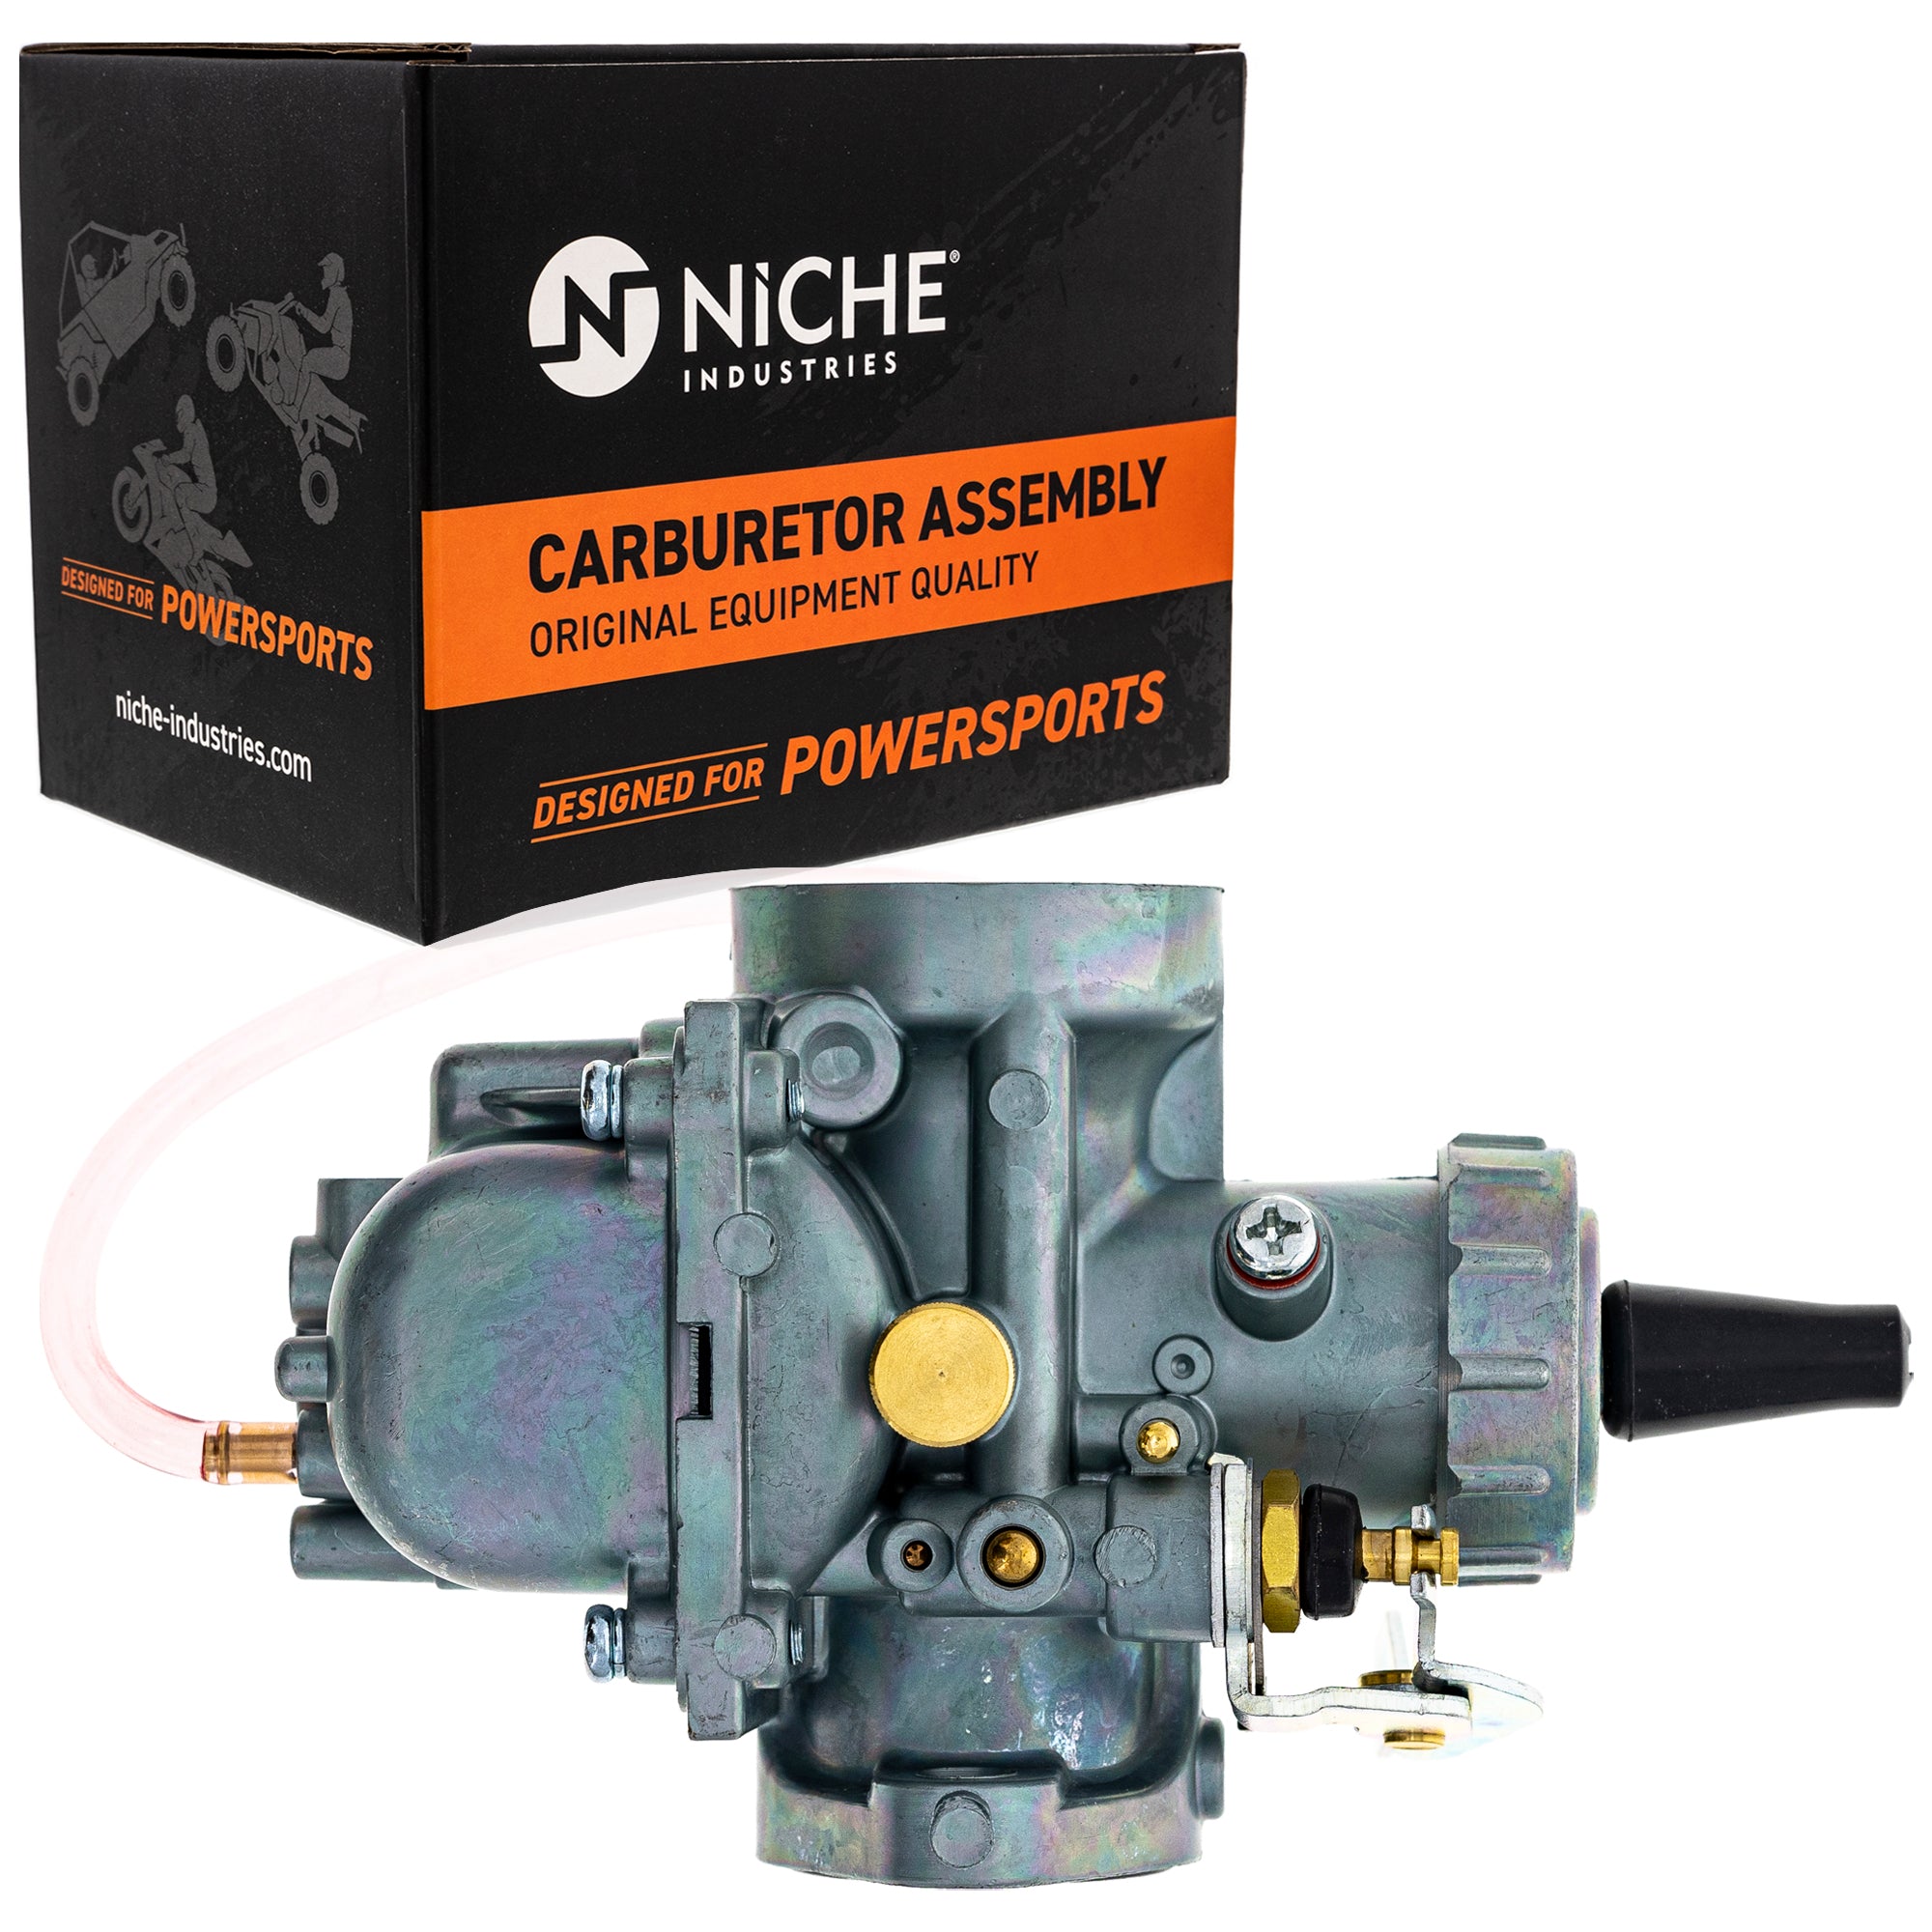 NICHE Carburetor Assembly 13200-28603